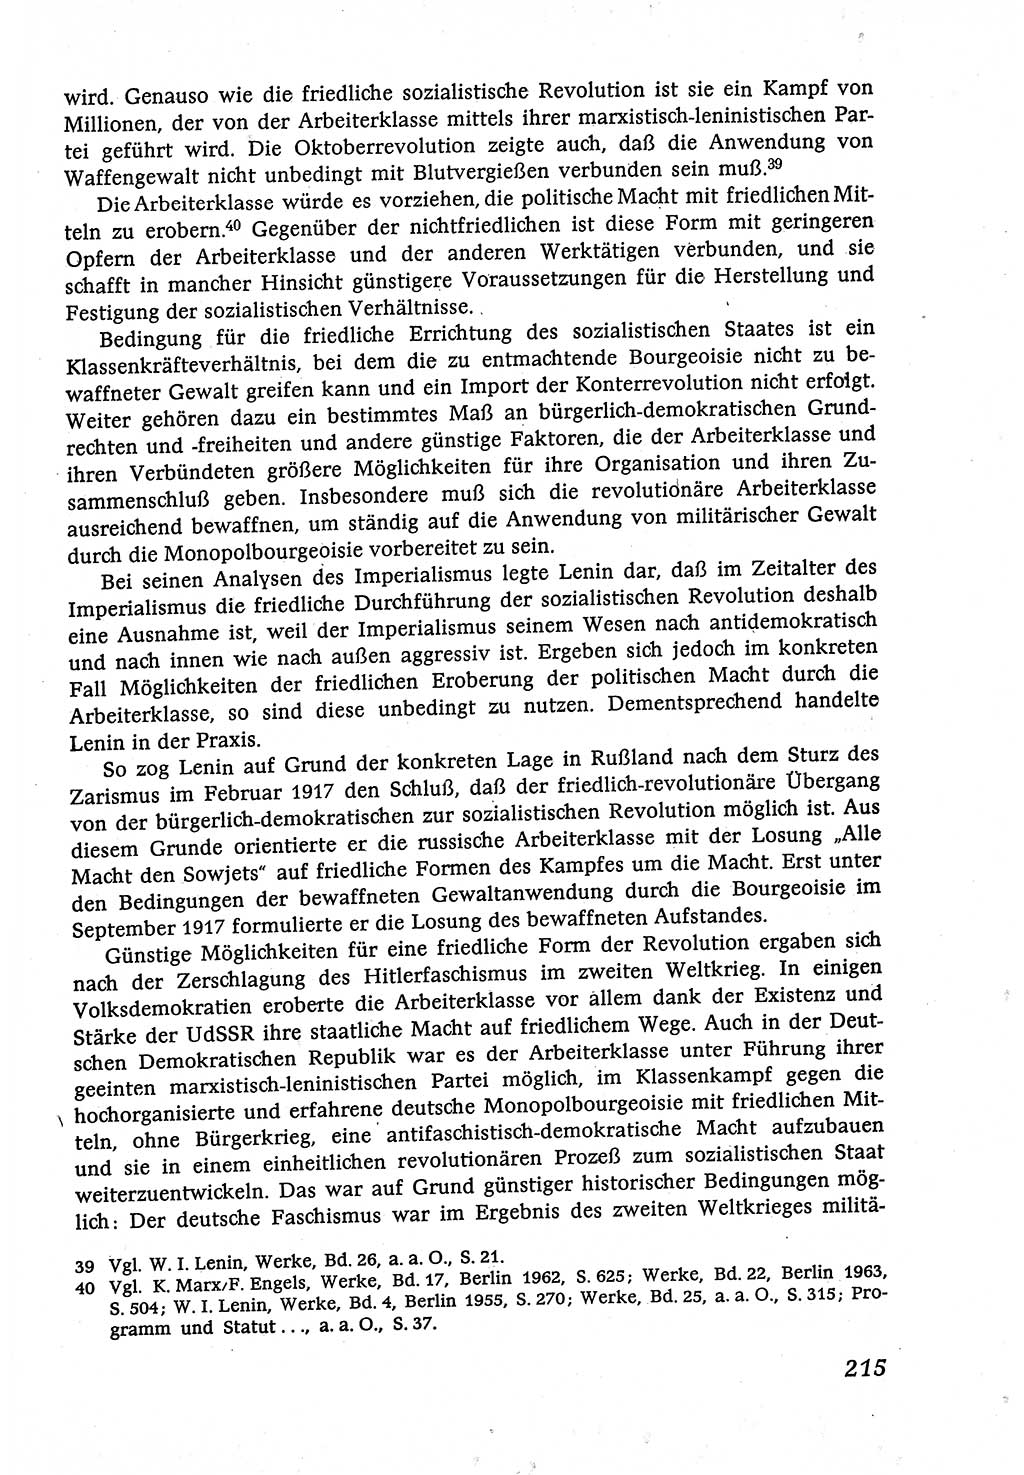 Marxistisch-leninistische (ML) Staats- und Rechtstheorie [Deutsche Demokratische Republik (DDR)], Lehrbuch 1980, Seite 215 (ML St.-R.-Th. DDR Lb. 1980, S. 215)